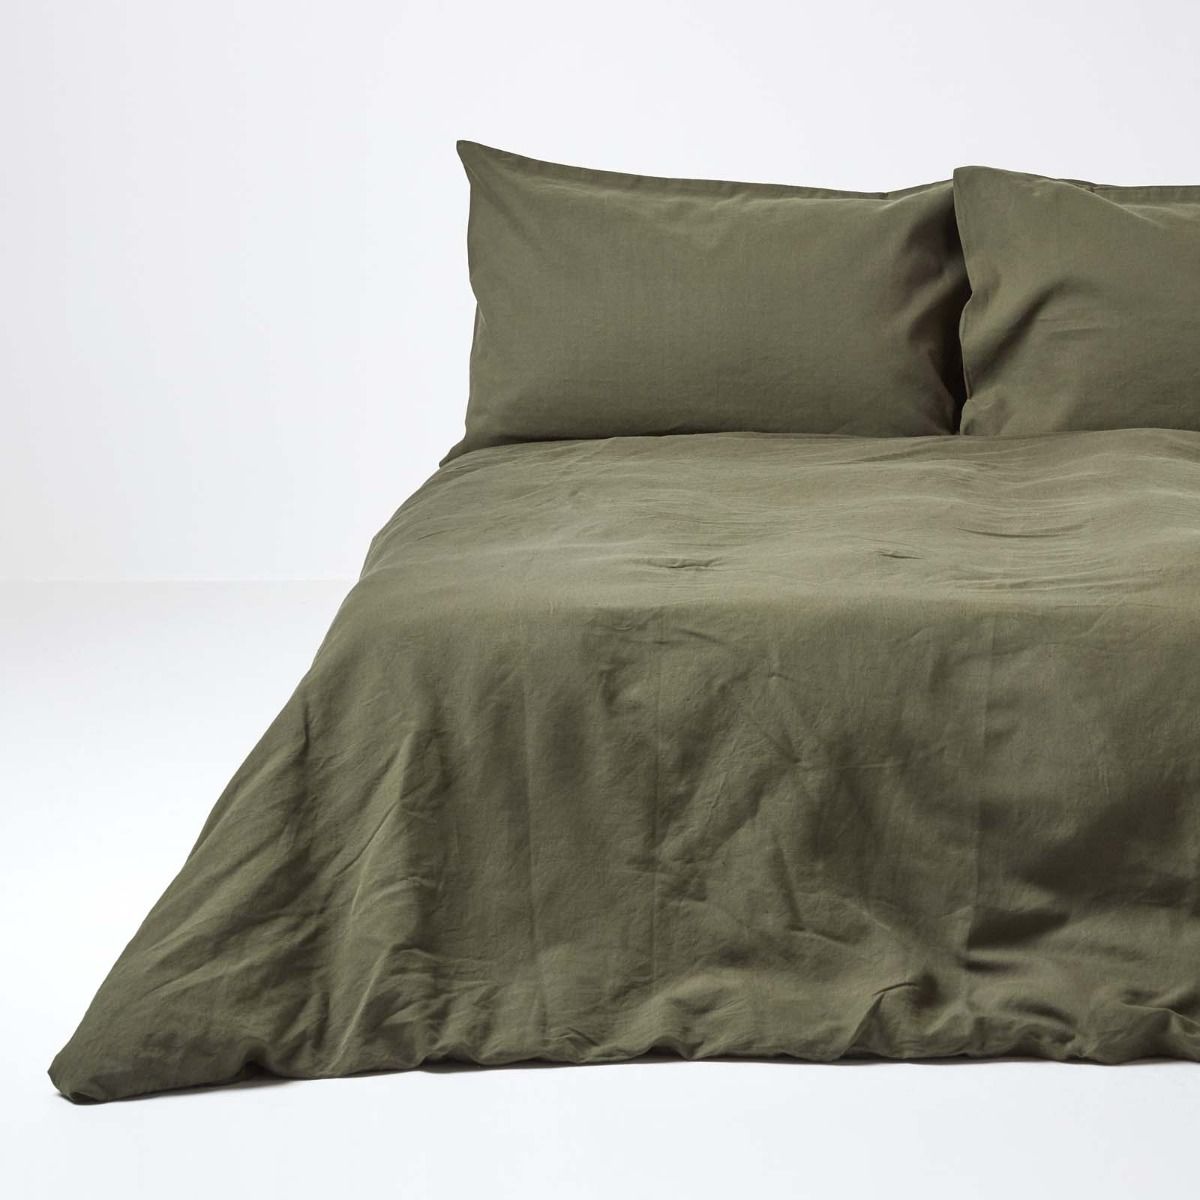 Khaki Green Linen Duvet Cover Set, Bed Linen Duvet Covers